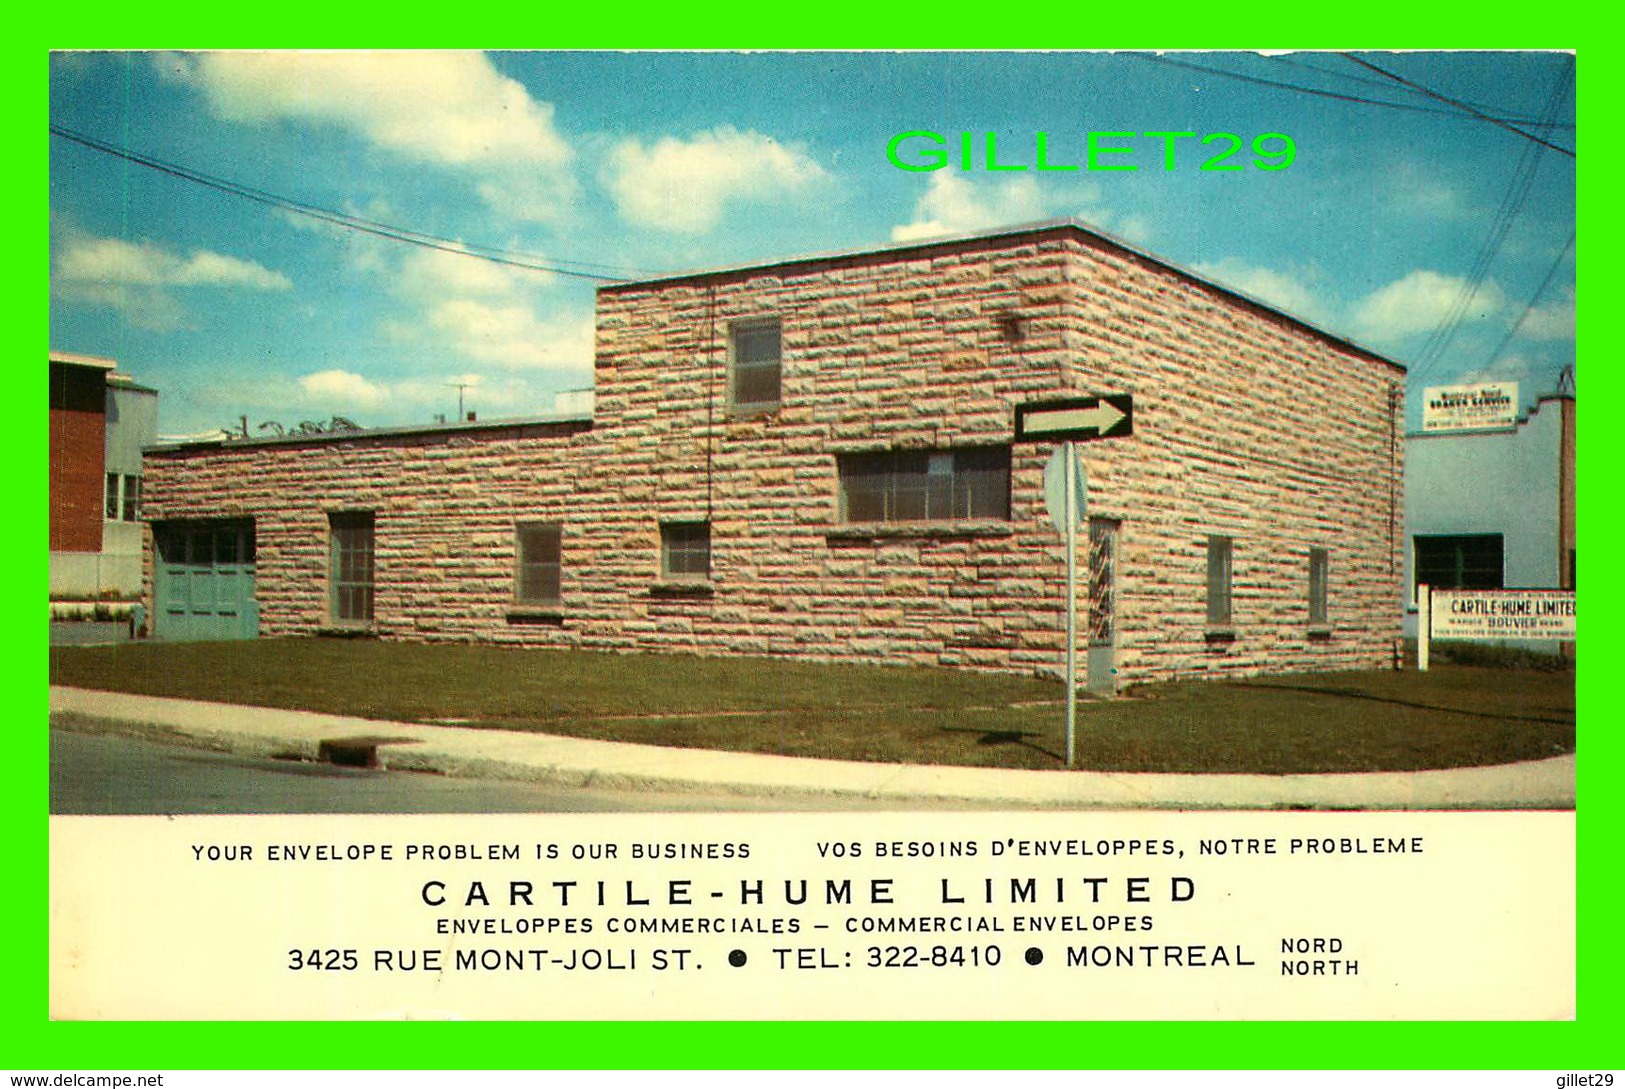 MONTRÉAL, QUÉBEC - CARTILE-HUME LIMITED - CIRCULÉE EN 1989 - PUB. BY WAL-MIR & CO - - Montreal